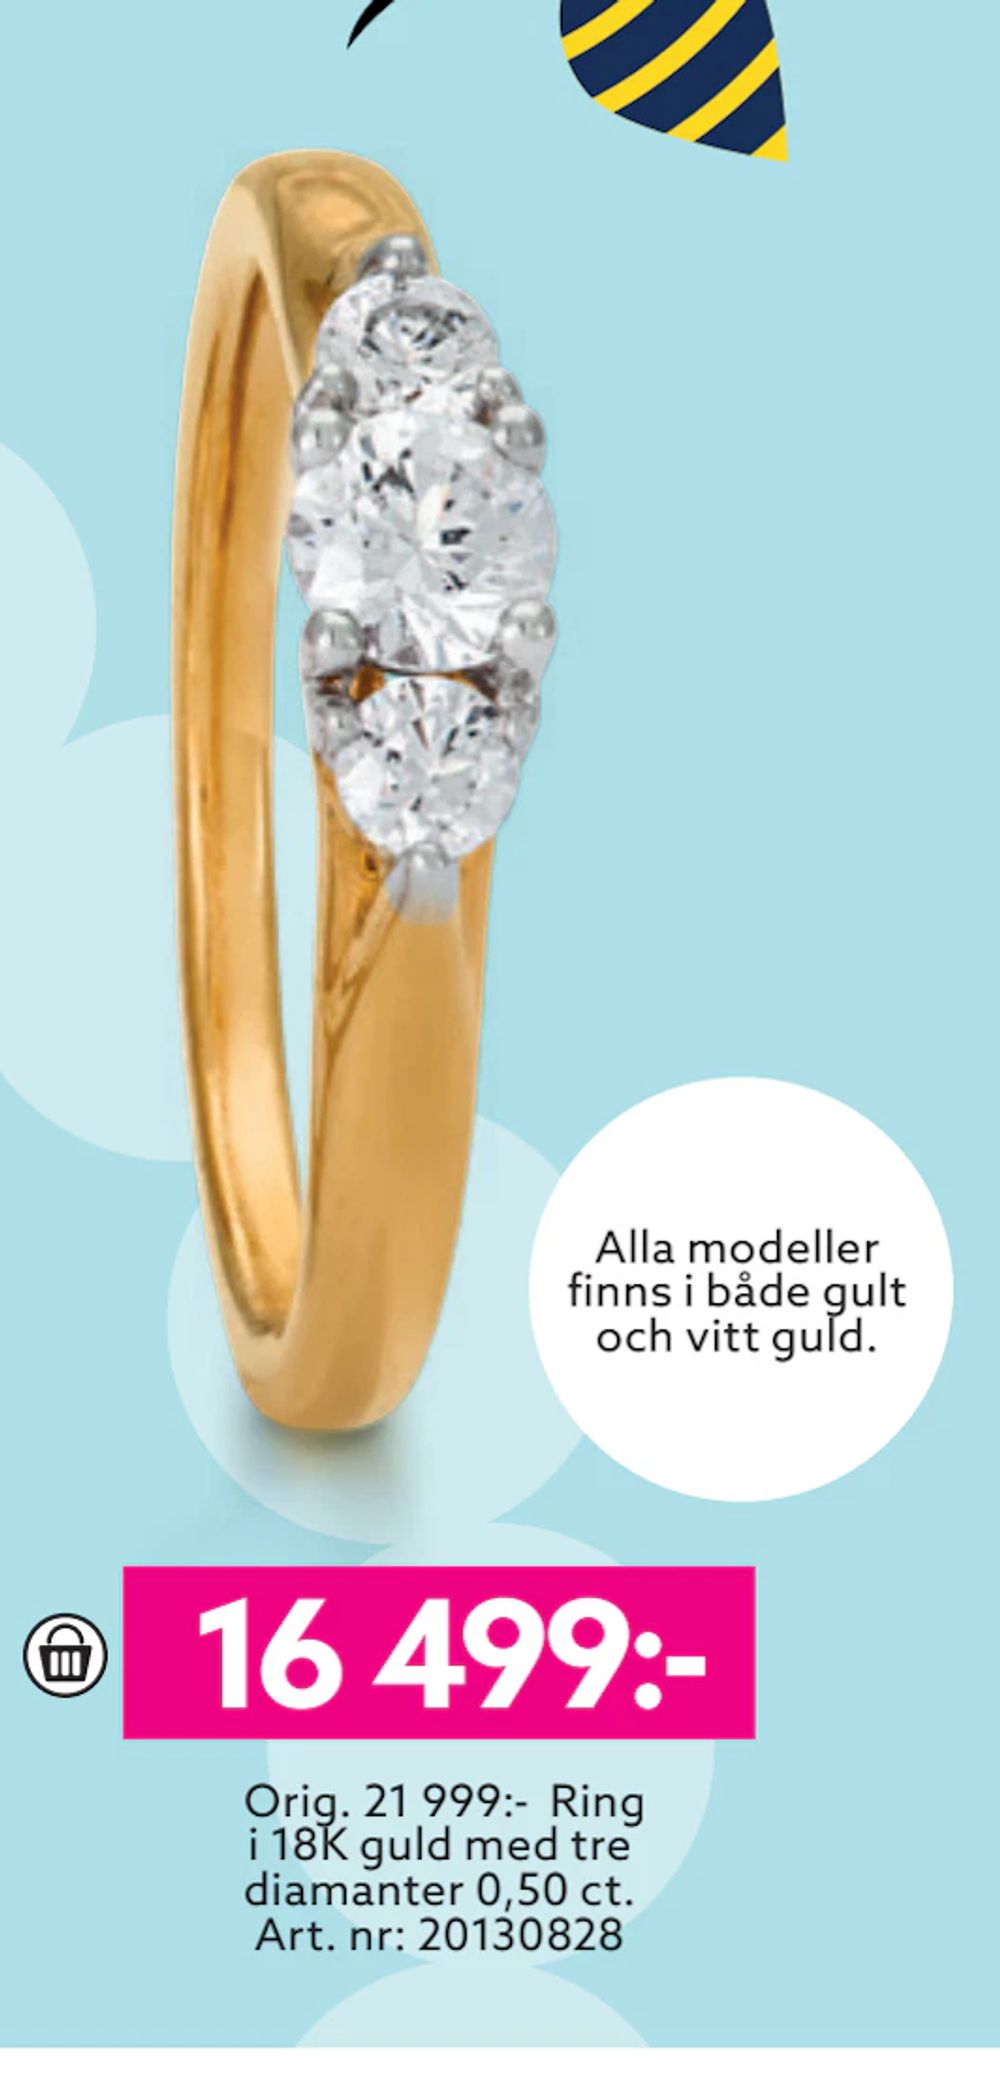 Erbjudanden på Ring i 18K guld med tre diamanter 0,50 ct från Albrekts guld för 16 499 kr